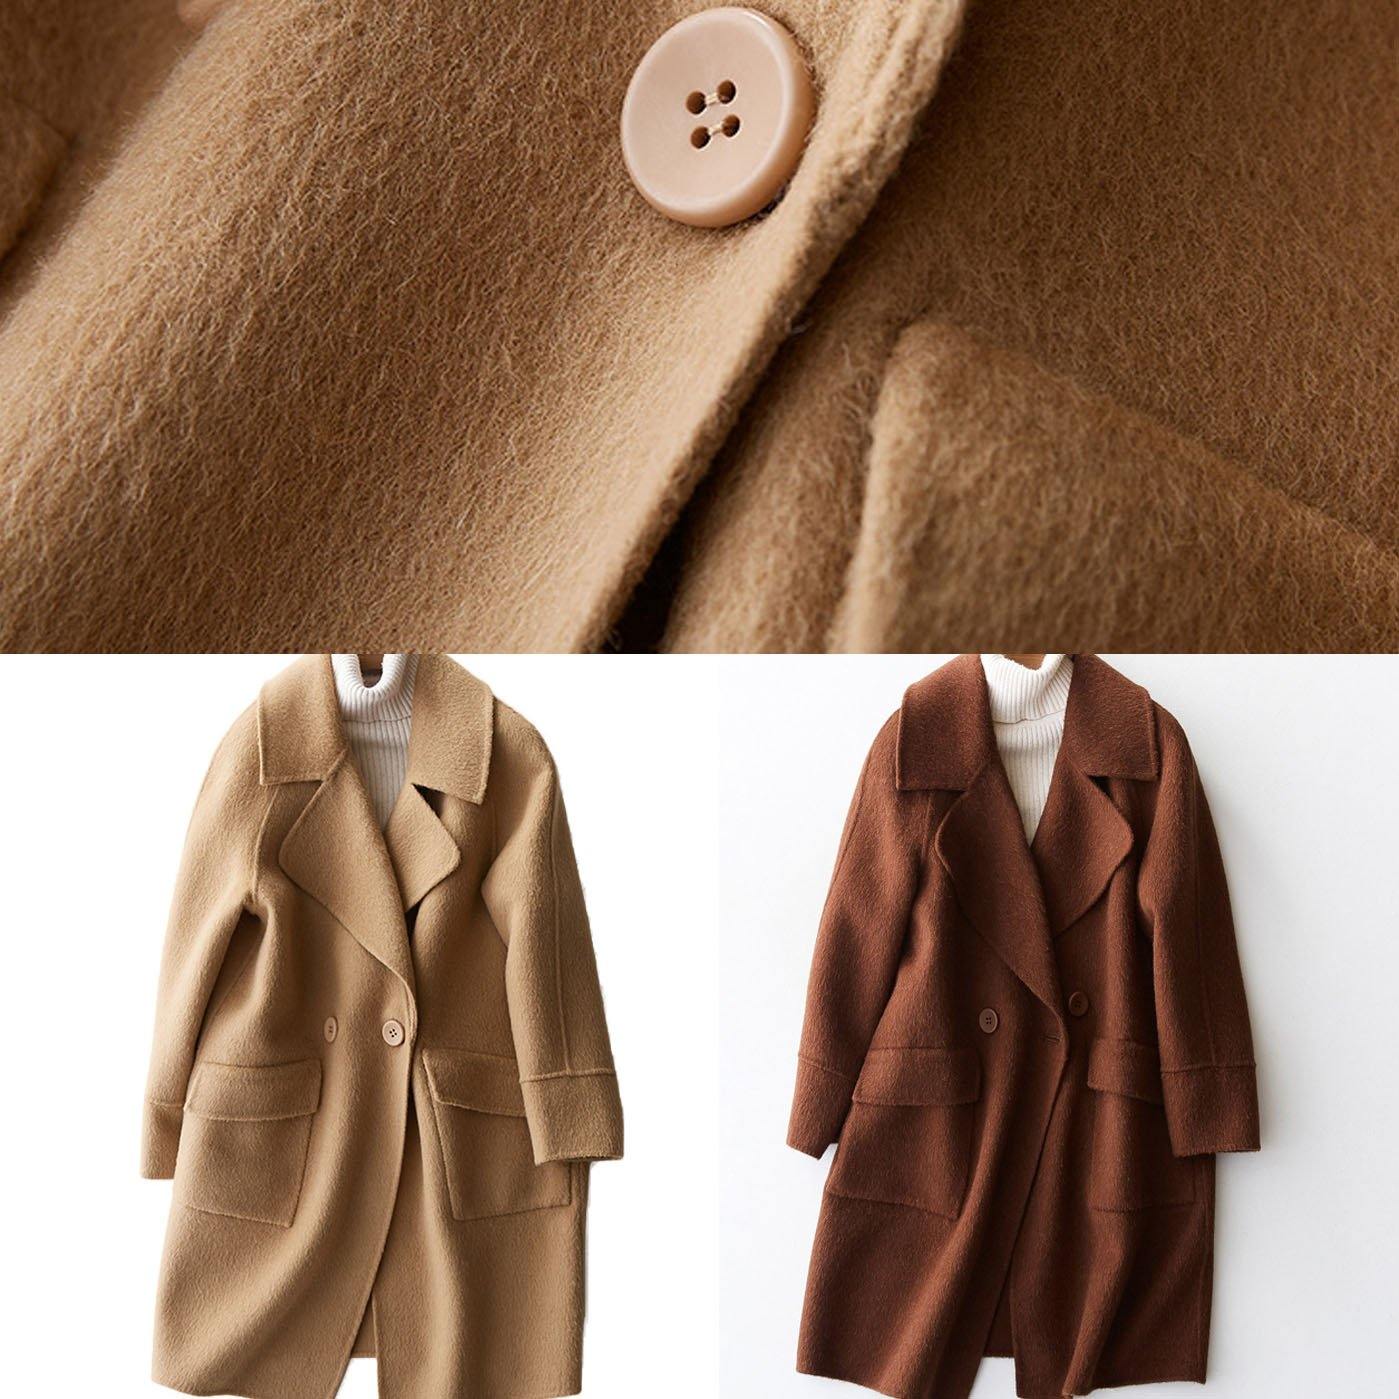 vintage beige Woolen Coat Women plus size medium length jackets big pockets woolen outwear lapel collar